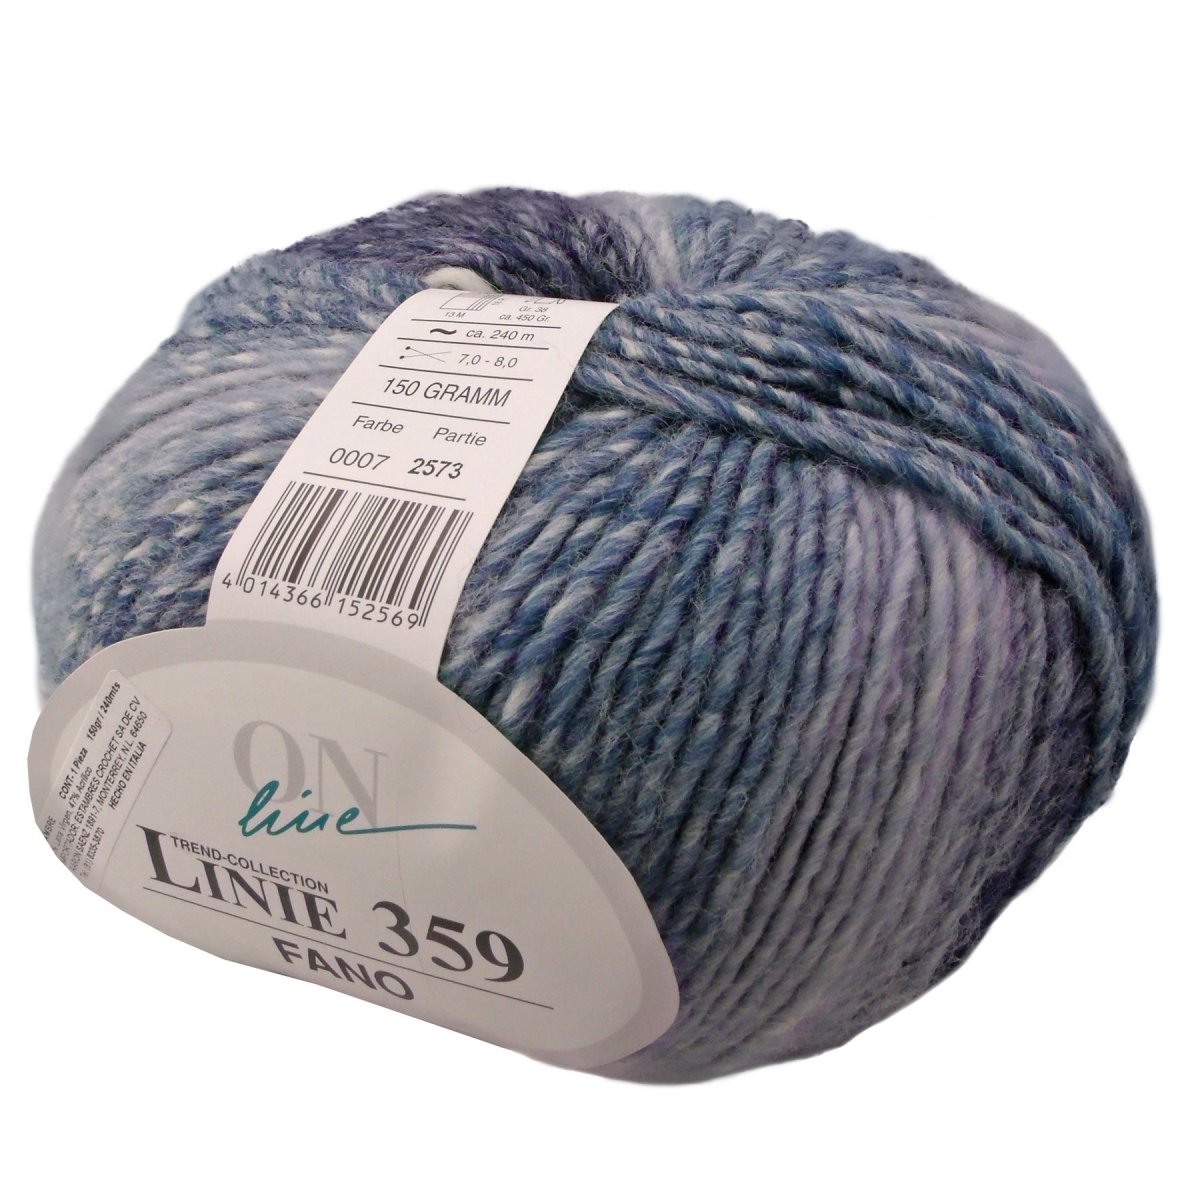 FANO - Crochetstores110359-0044014366152538